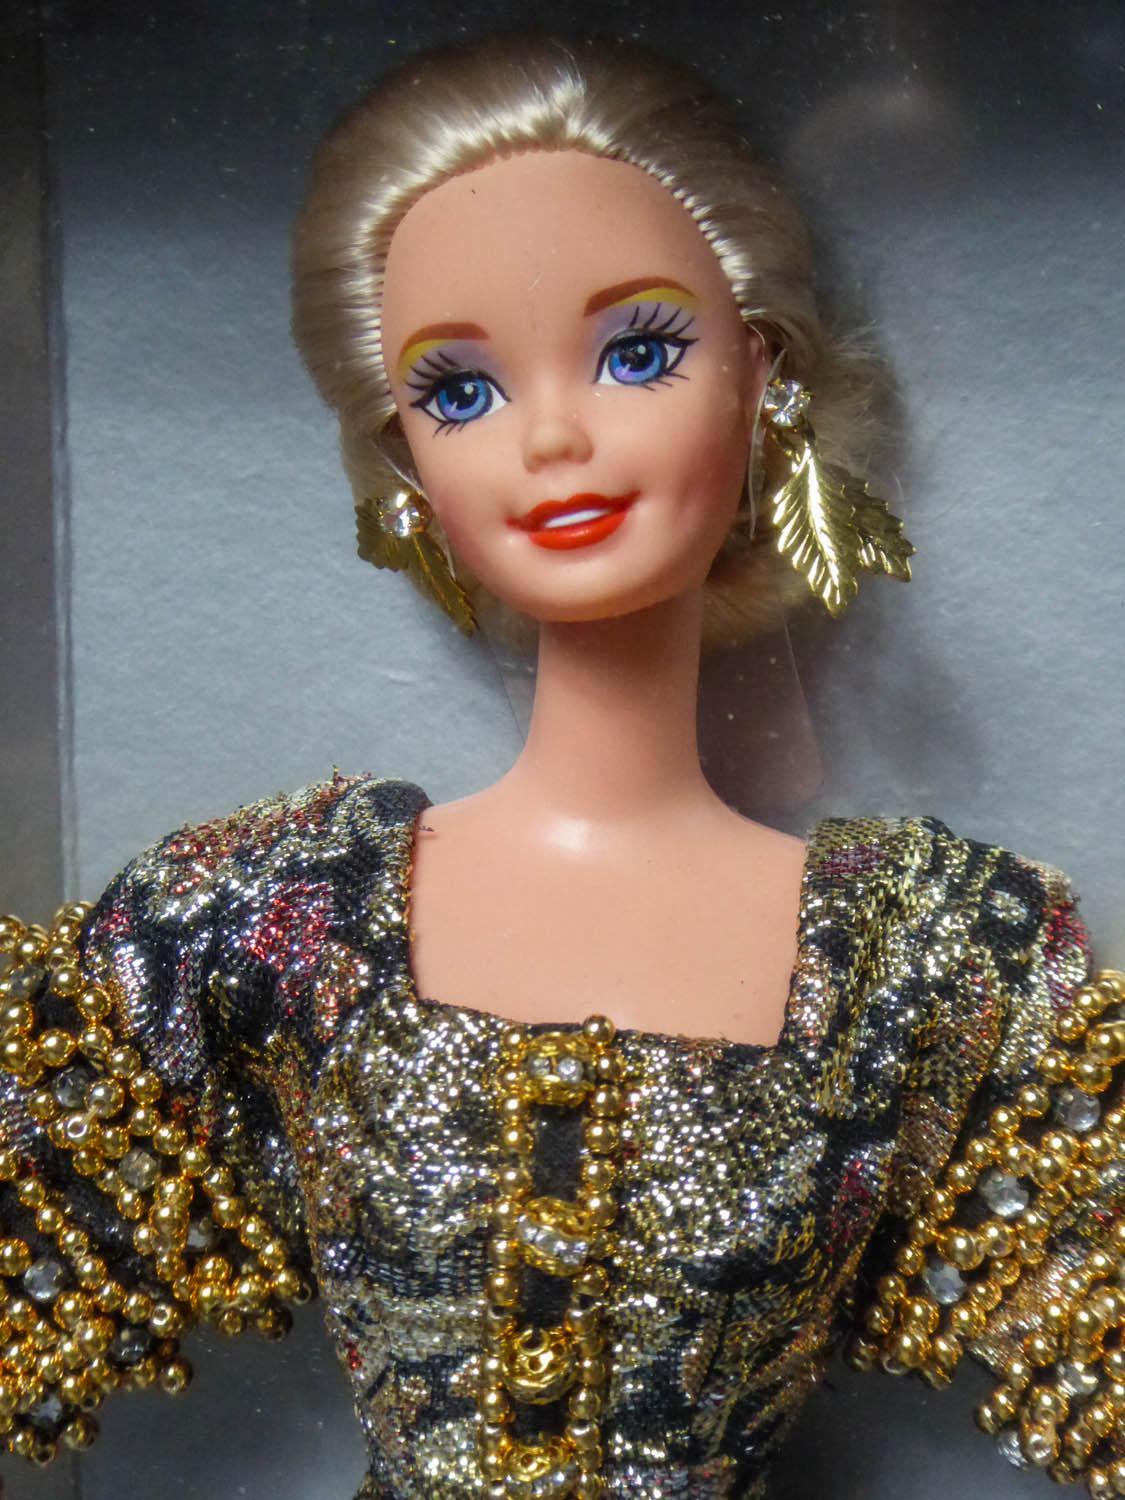 送料無料激安祭 〇ドール Christian Dior Paris クリスチャンディオール Mattel マテル 1996 ファッション 人形  着せ替え人形 コレクション スーパーモデル パリ